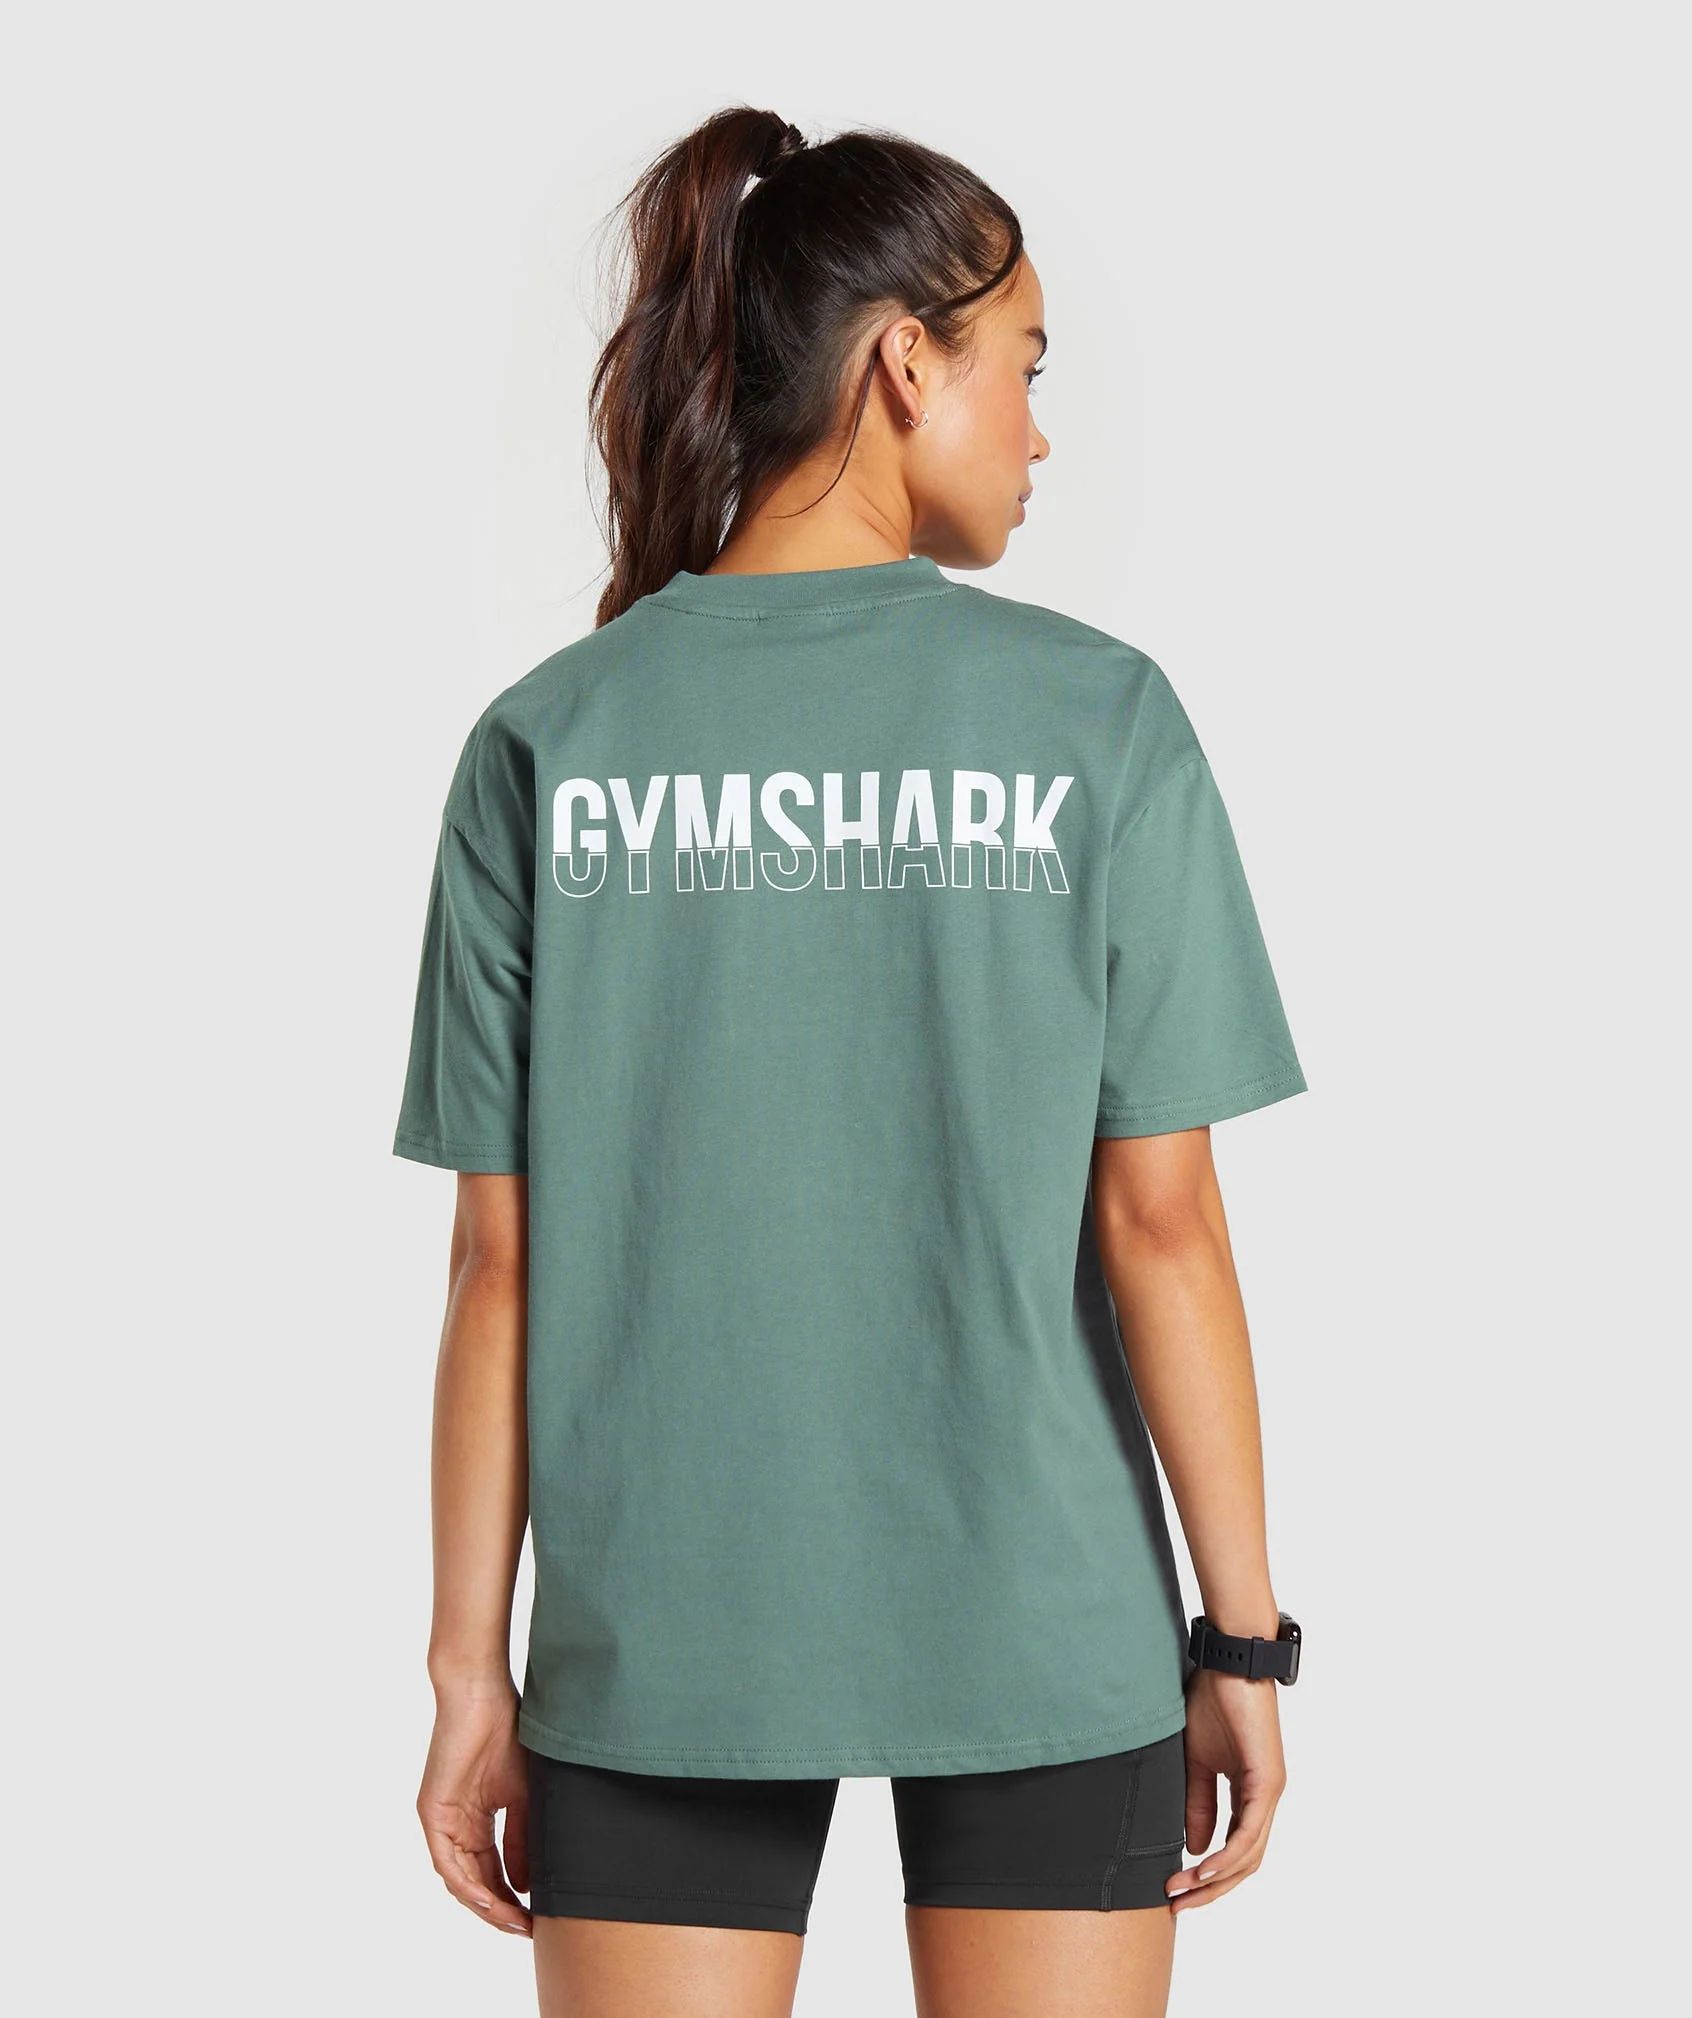 Gymshark Fraction Oversized T-Shirt - Cargo Teal | Gymshark (Global)